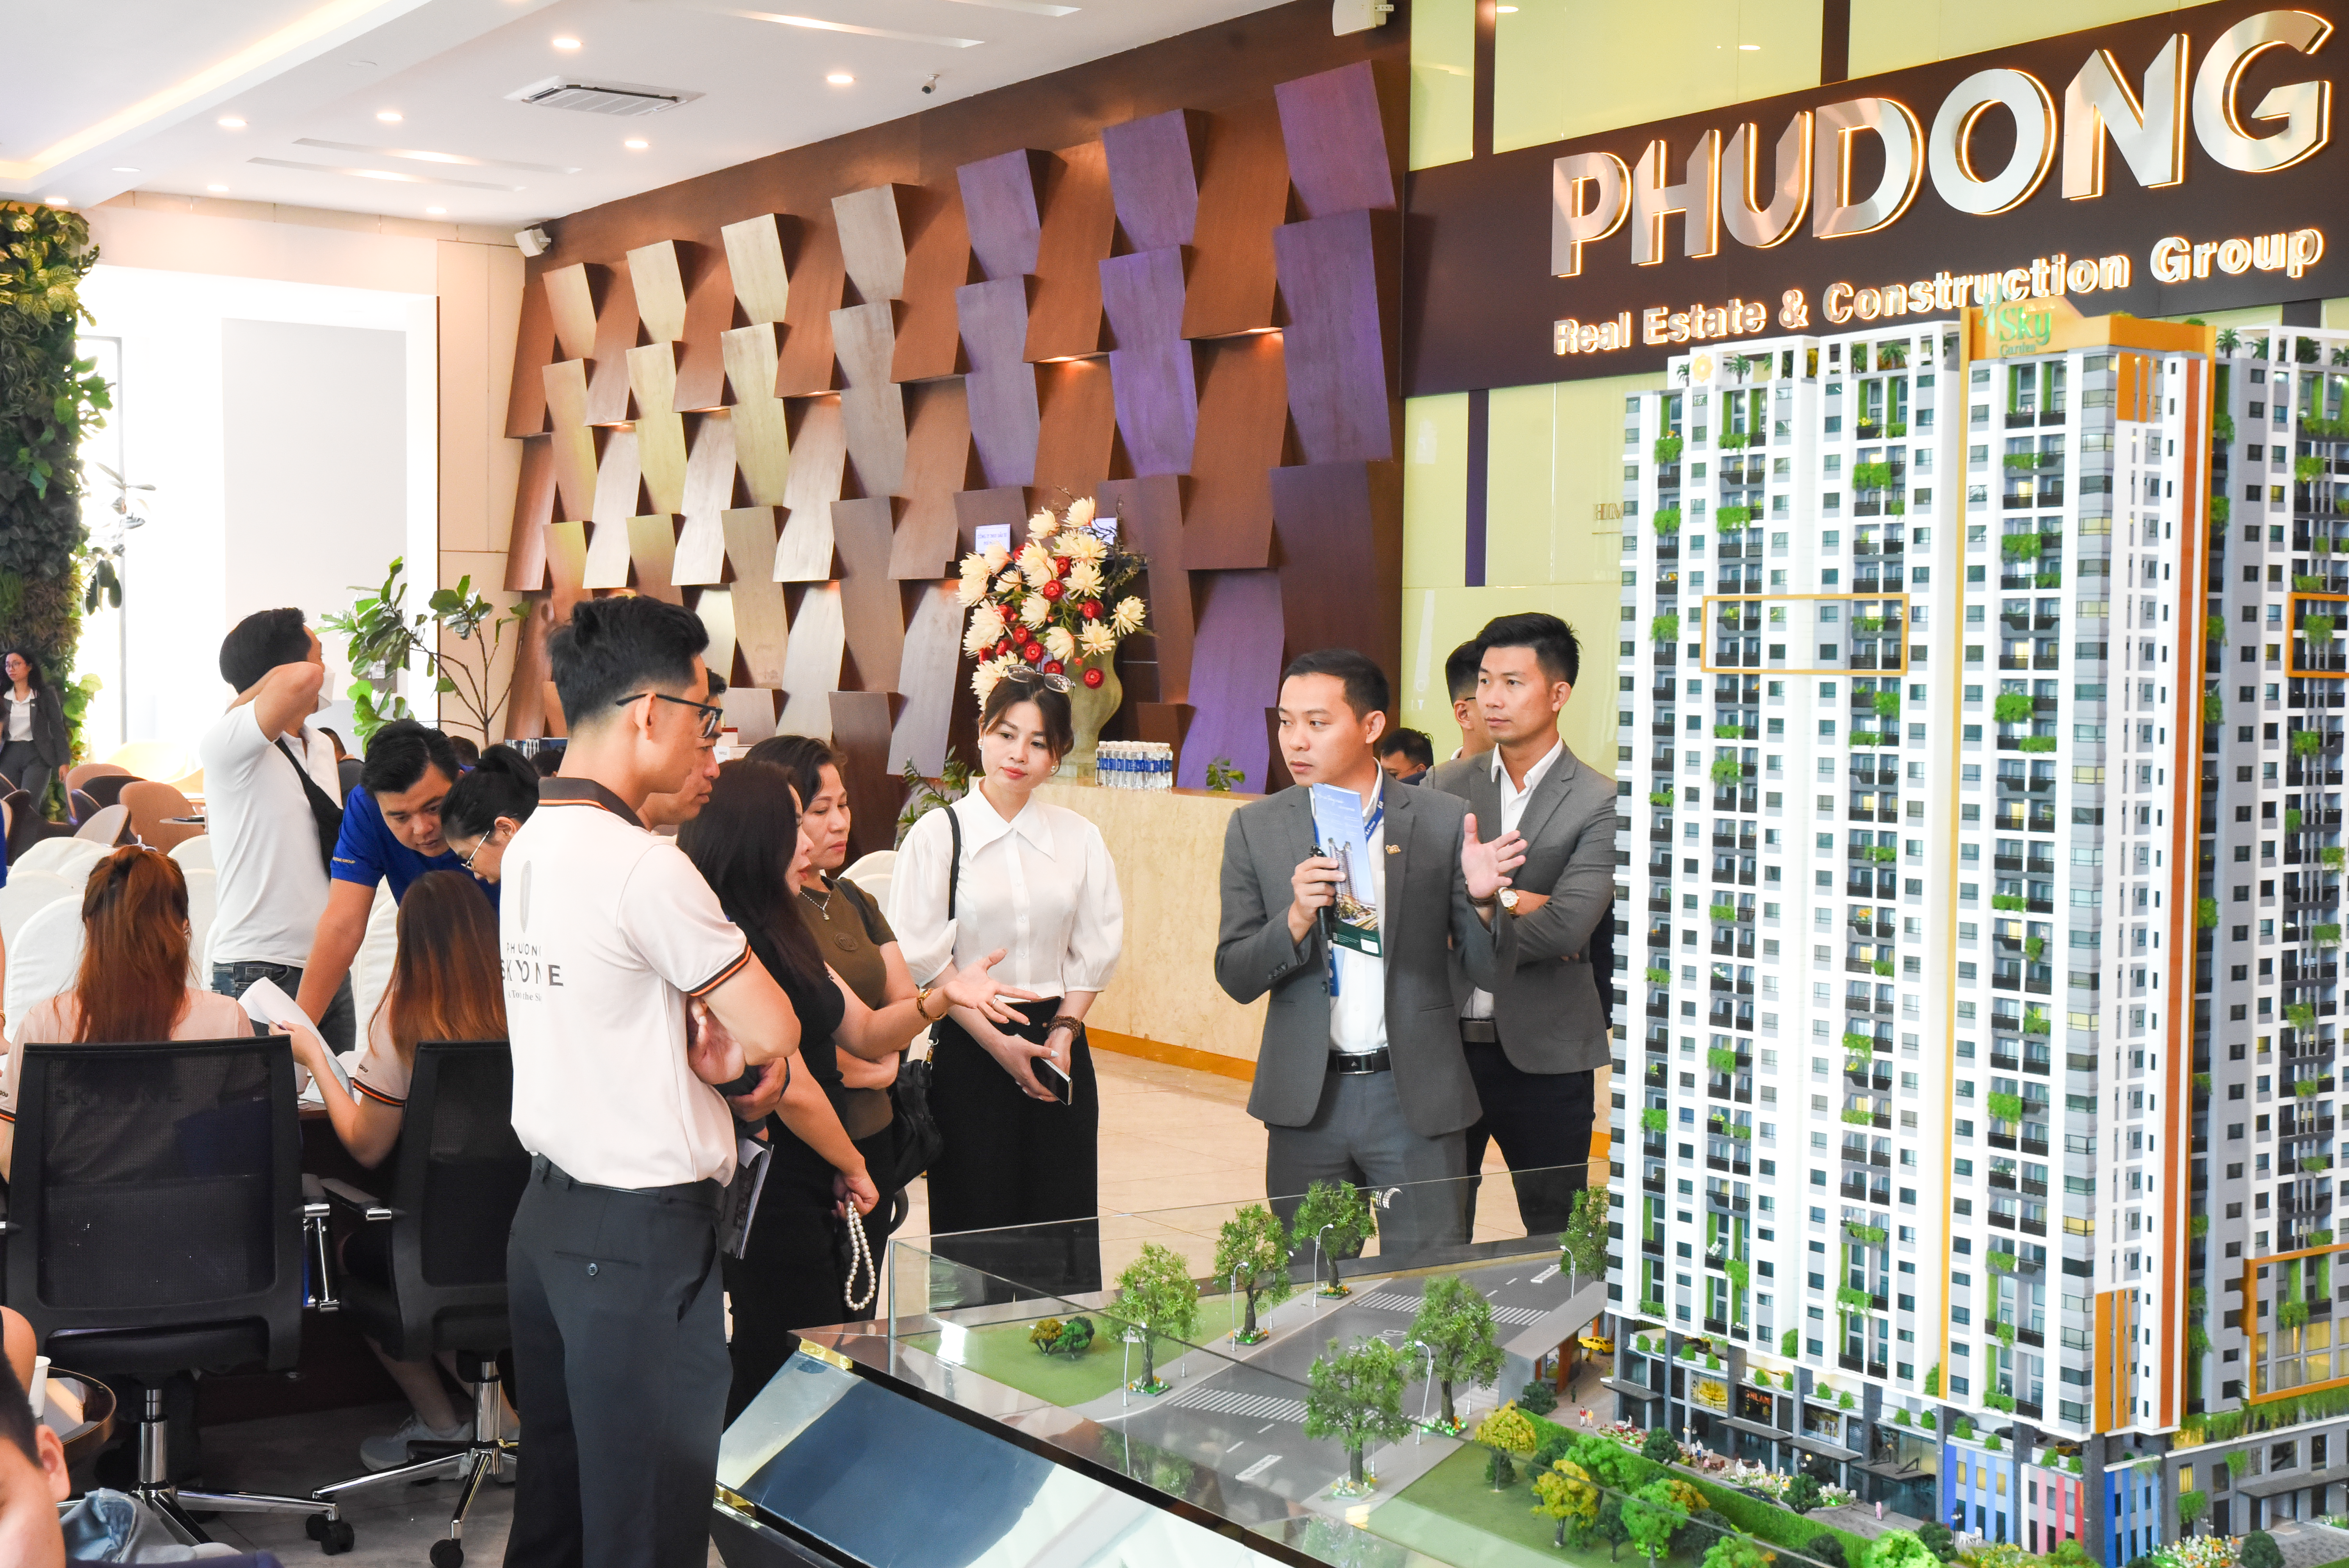 hiện ở TP.Hồ Chí Minh, người tìm kiếm chung cư quan tâm nhiều nhất các dự án ở khu vực dân cư đông đúc